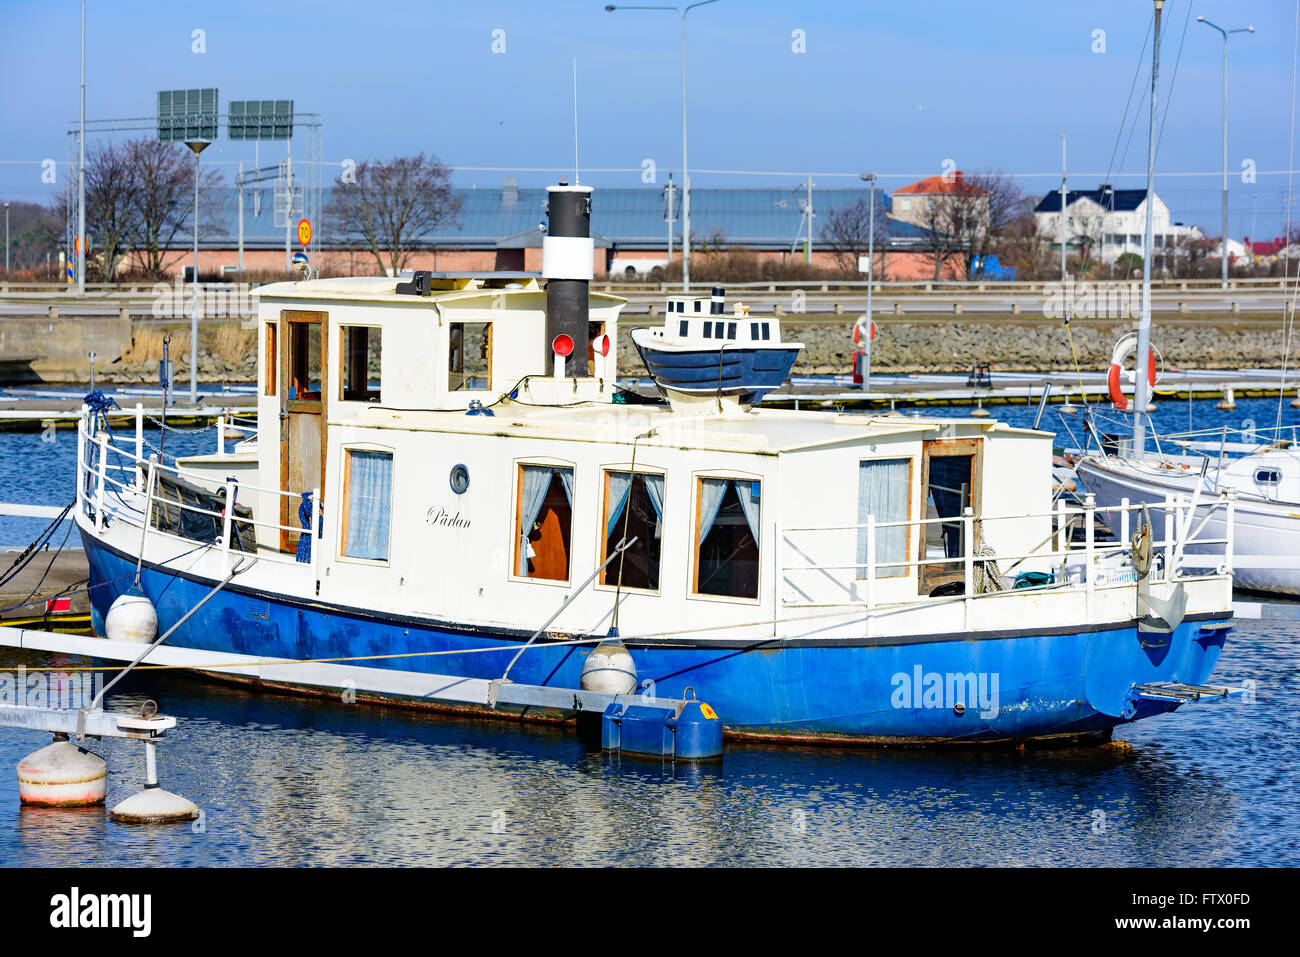 Karlskrona, Suède - Mars 27, 2016 : Petite copie miniature d'un bateau placé sur le dessus du bateau d'origine dans la ville de plaisance. Banque D'Images